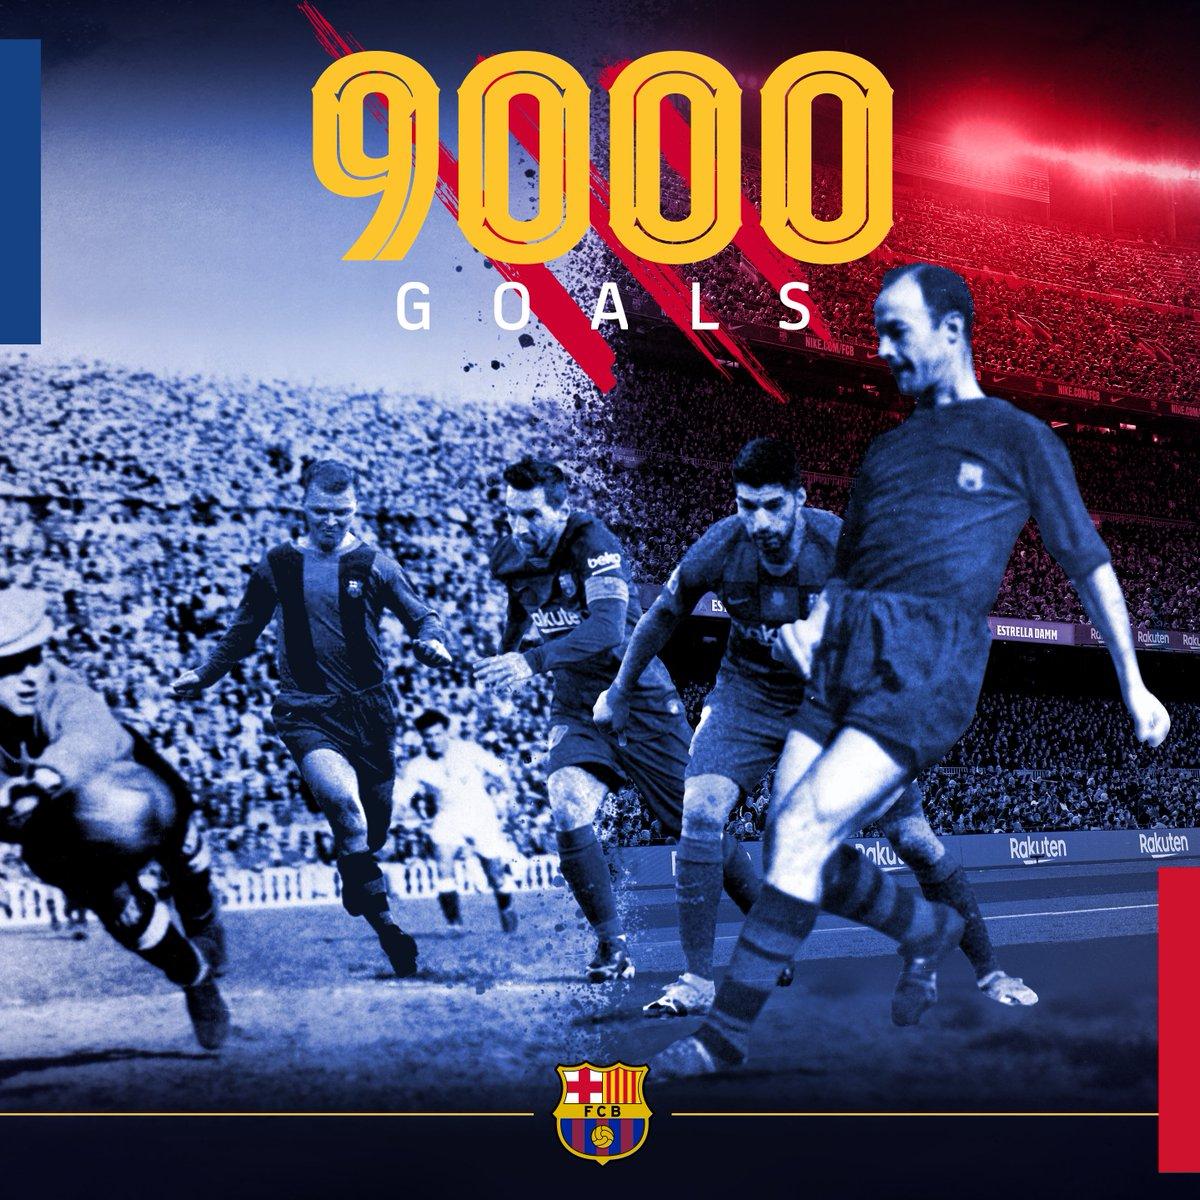 Barça reach 9,000 goals